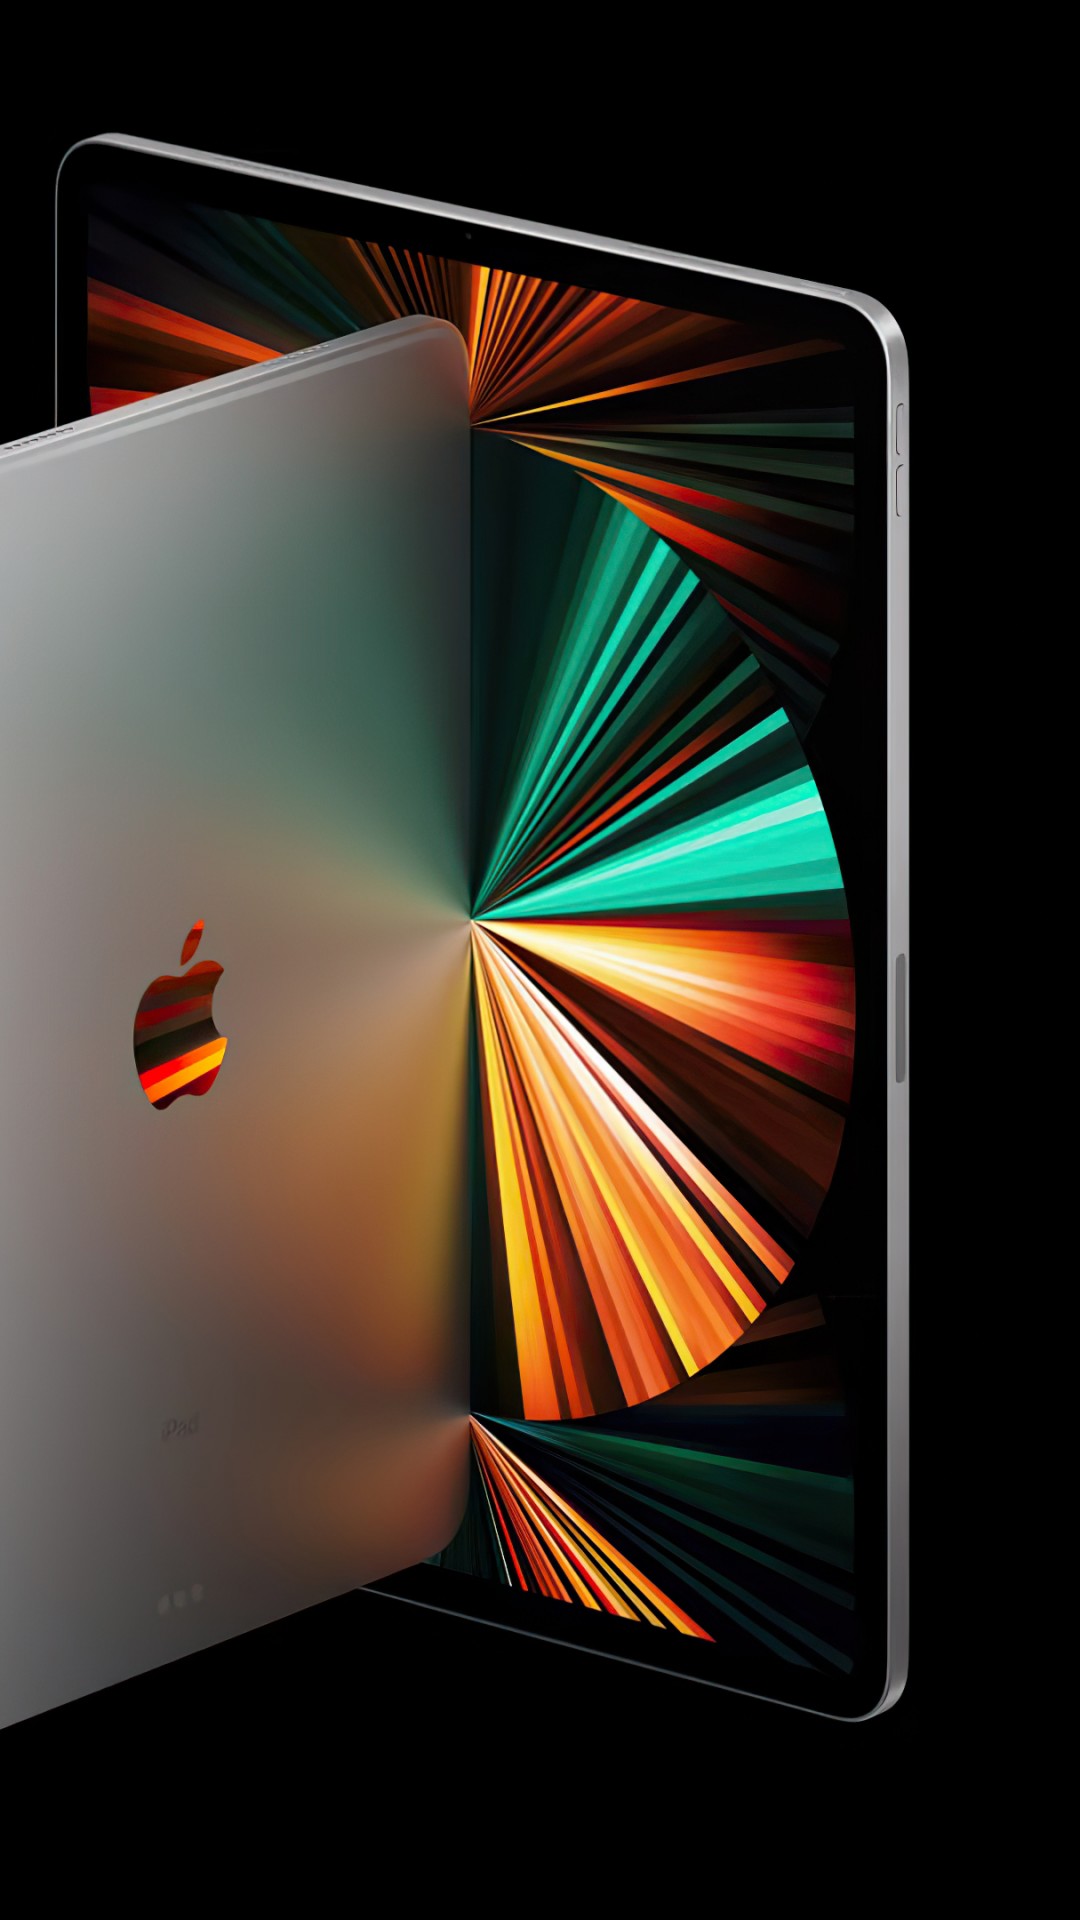 Wallpaper iPad Pro 2021, Apple April 2021 Event, 4K, Hi ...